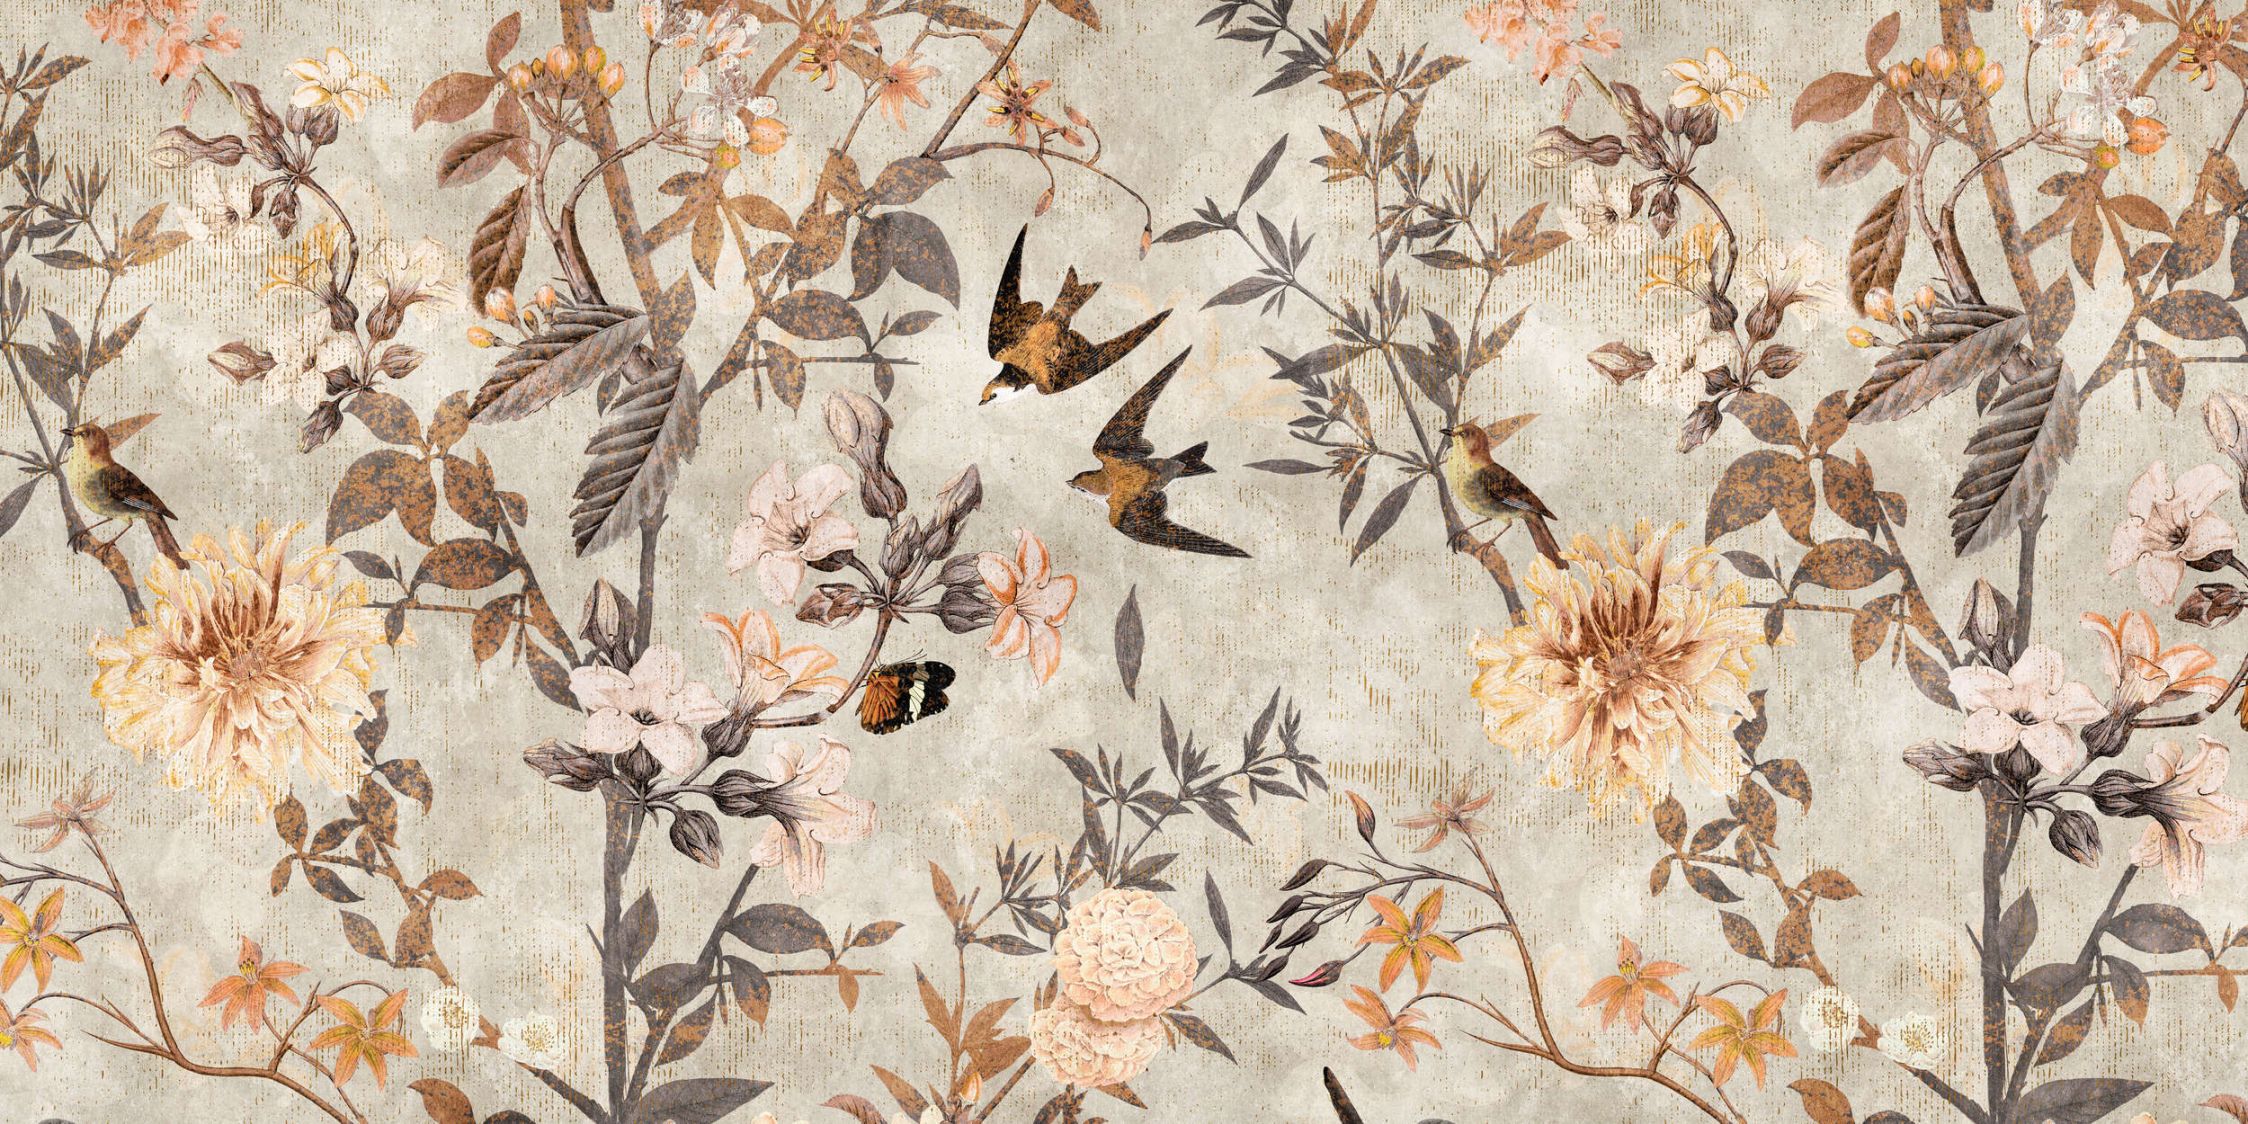             Fotomural »eden« - Pájaros y flores de estilo vintage - Tela no tejida de textura ligera
        